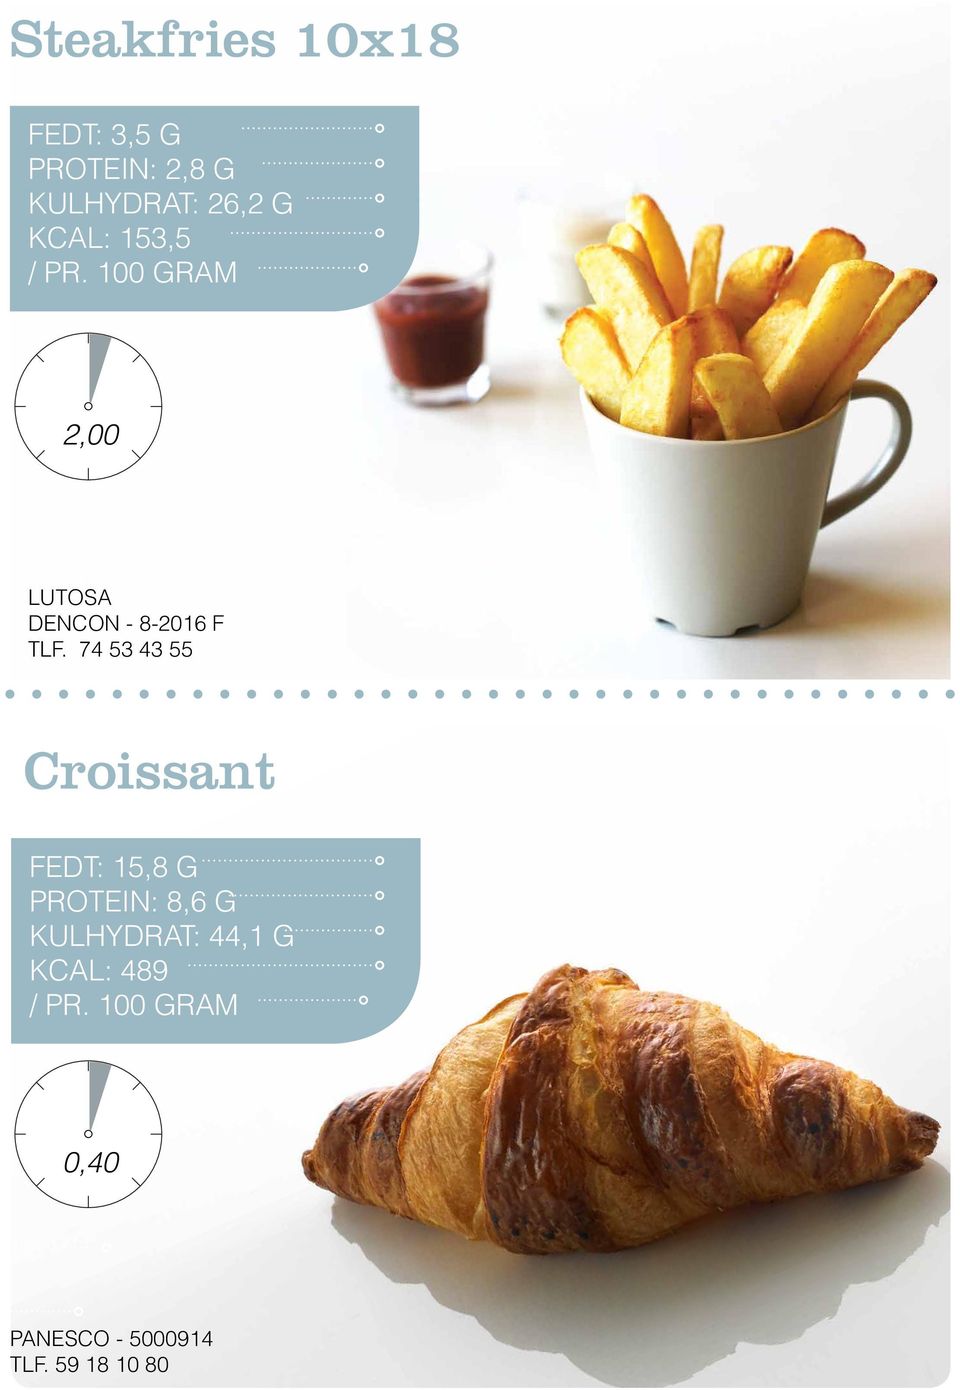 74 53 43 55 Croissant Fedt: 15,8 G Protein: 8,6 G Kulhydrat: